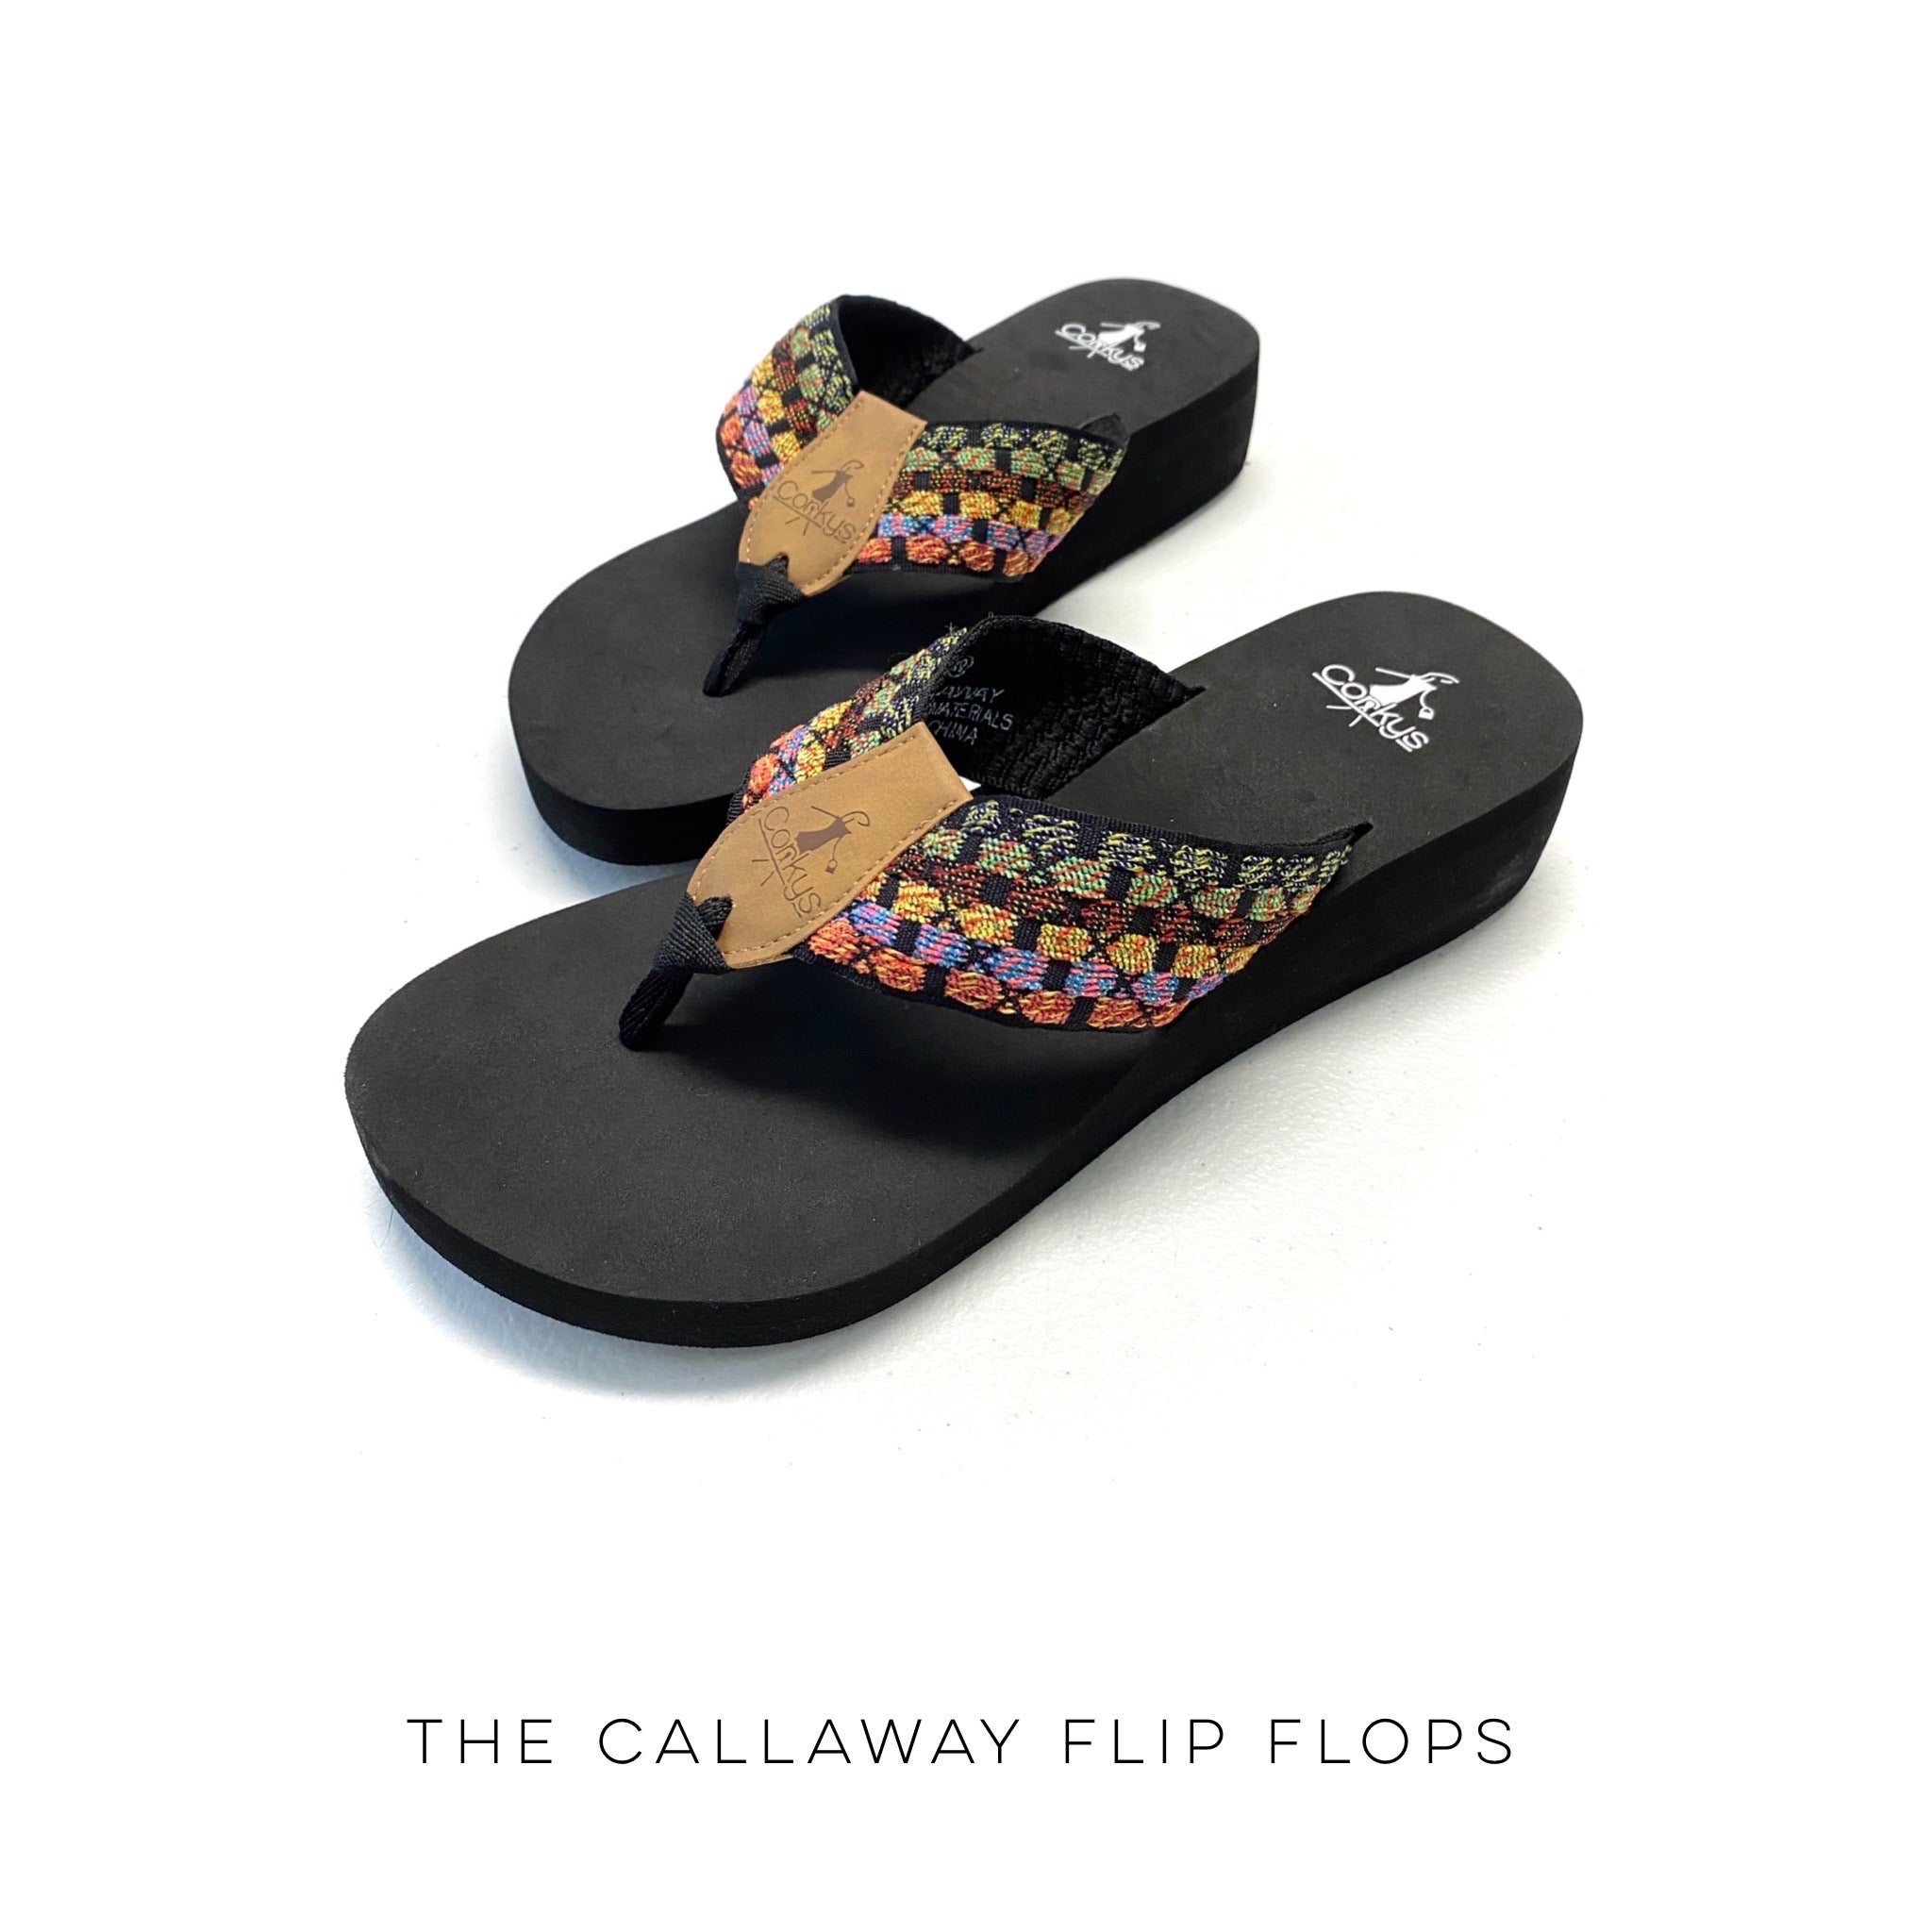 The Callaway Flip Flops